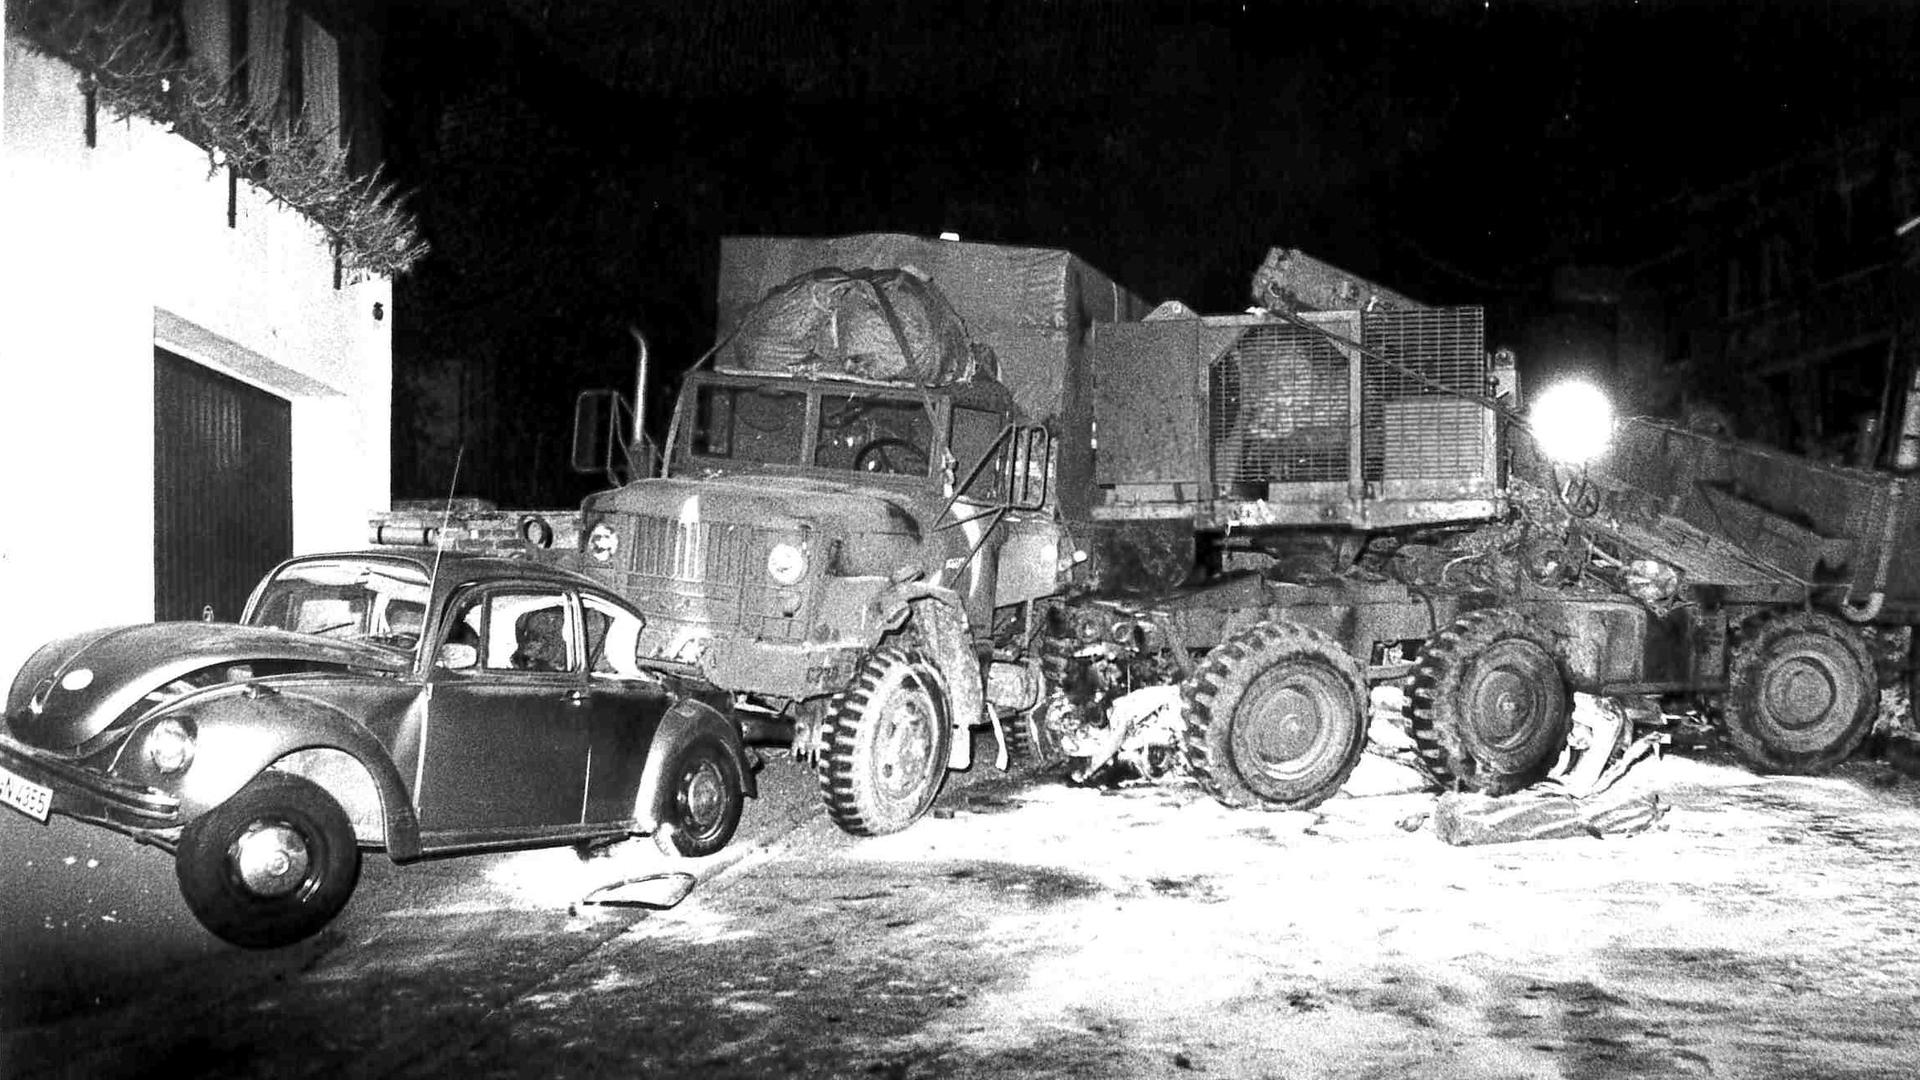 Brisante Last: Der Lkw der US-Streitkräfte, der 1982 in Waldprechtsweier verunglückte, transportierte eine Pershing-Rakete. Wegen der unklaren Gefahrenlage, mussten alle Einwohner ihre Häuser verlassen.